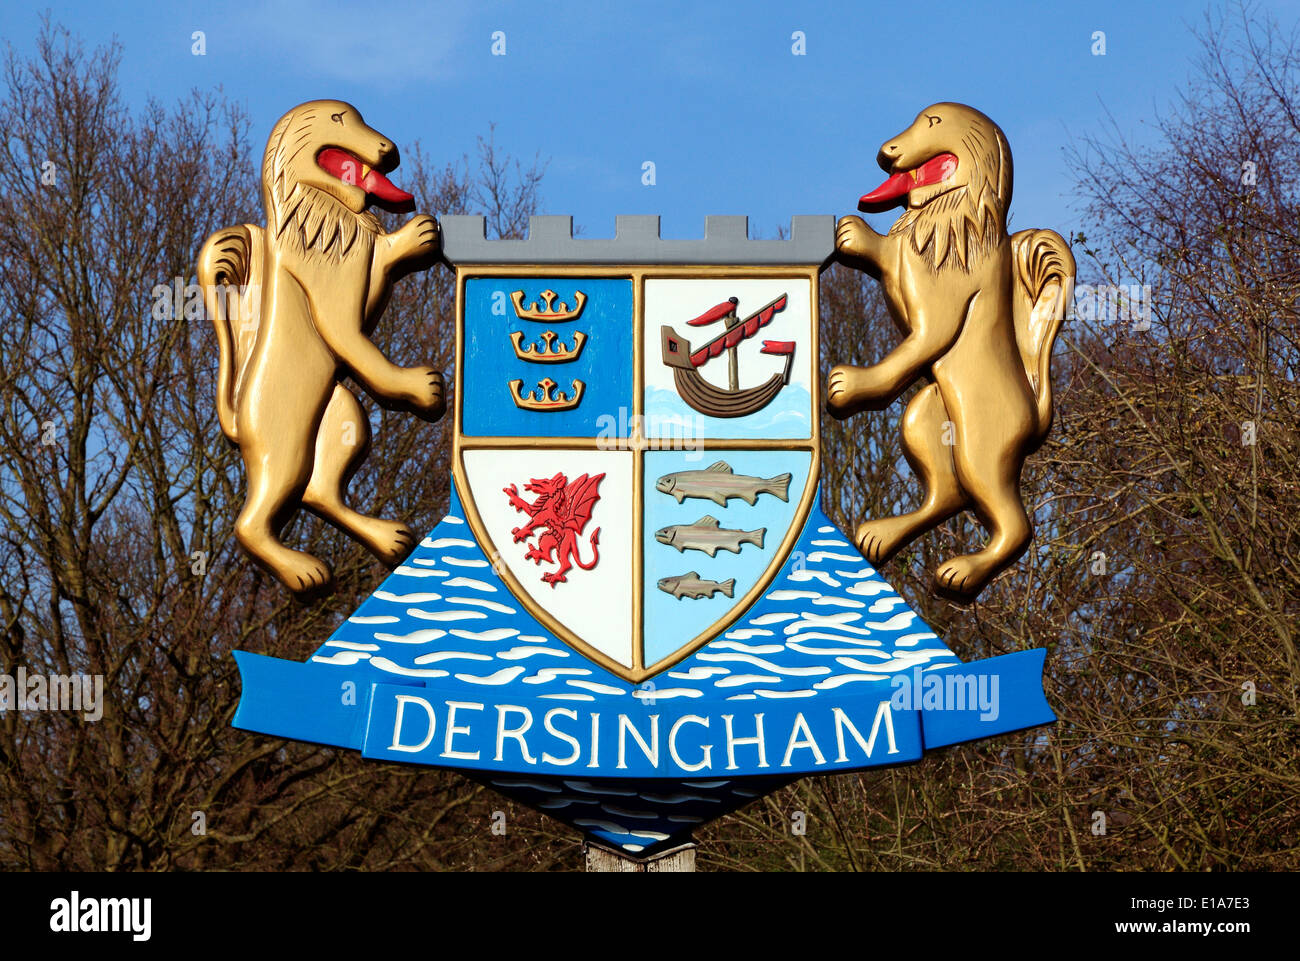 Dersingham Panneau du Village, Norfolk England UK affiches 2 deux lions bouclier héraldique héraldique rampante affichage en anglais Banque D'Images